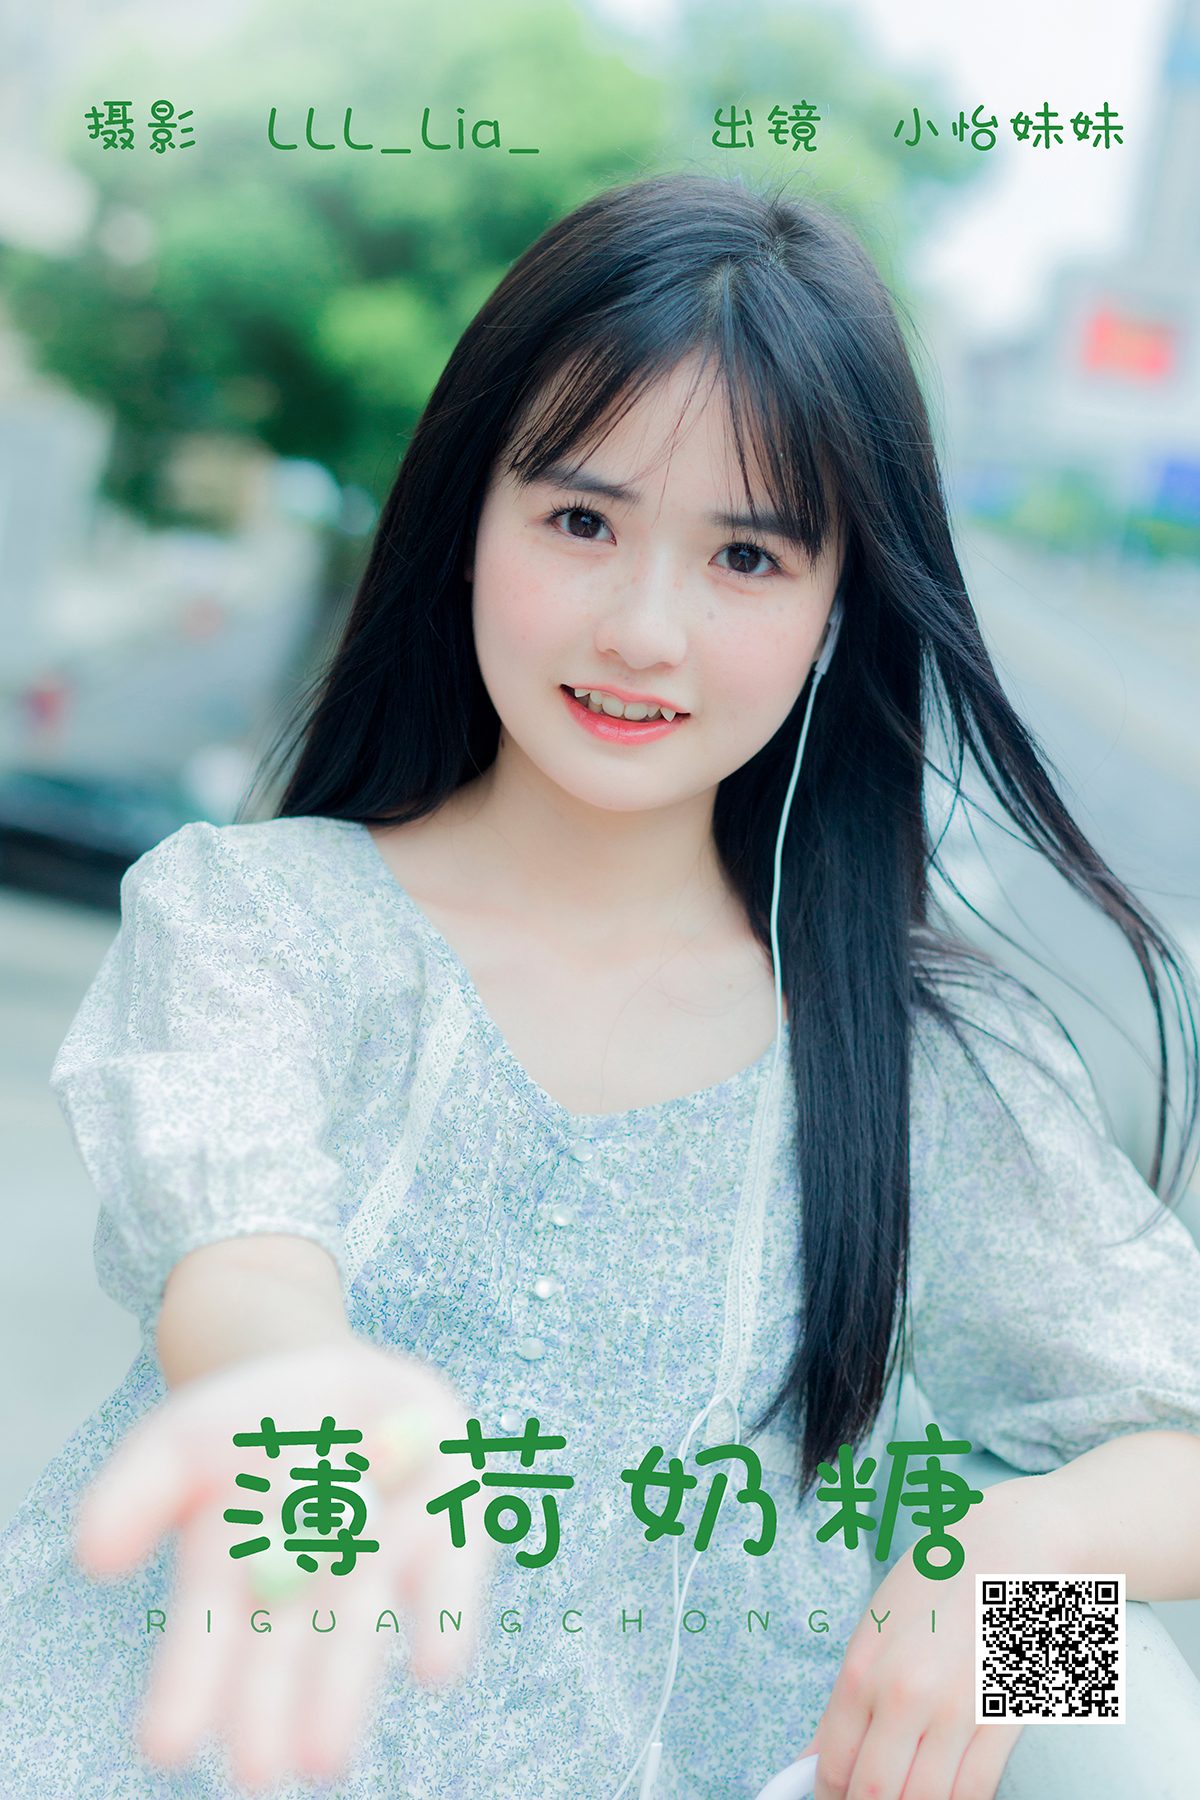 YiTuYu艺图语 Vol 5126 Xiao Yi Mei Mei Cute 0001 0292597122.jpg